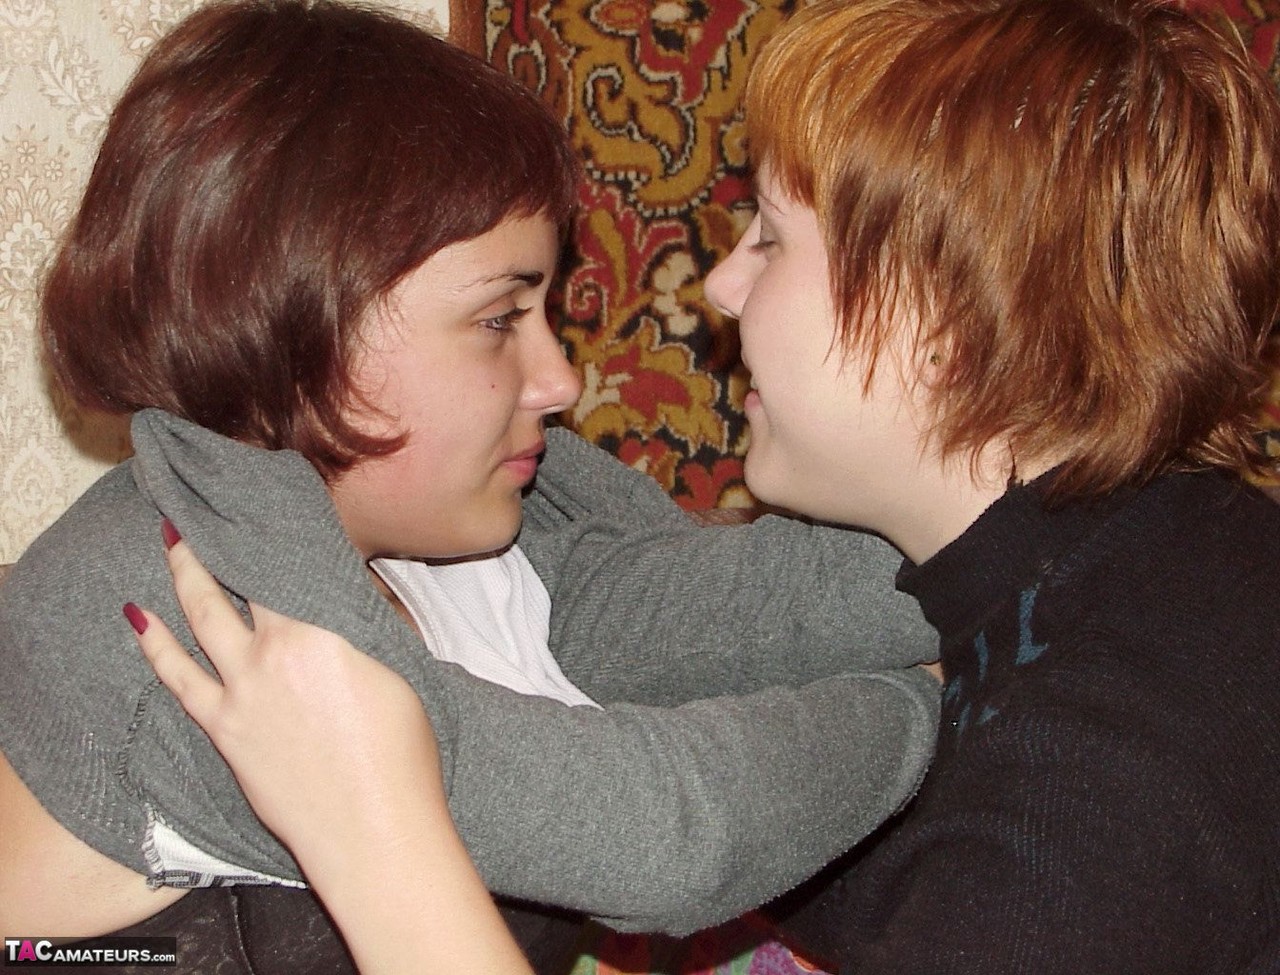 Redhead amateur Susy Rocks kisses her lesbian girlfriend as they disrobe ポルノ写真 #427233653 | TAC Amateurs Pics, Susy Rocks, Tiny Tits, モバイルポルノ